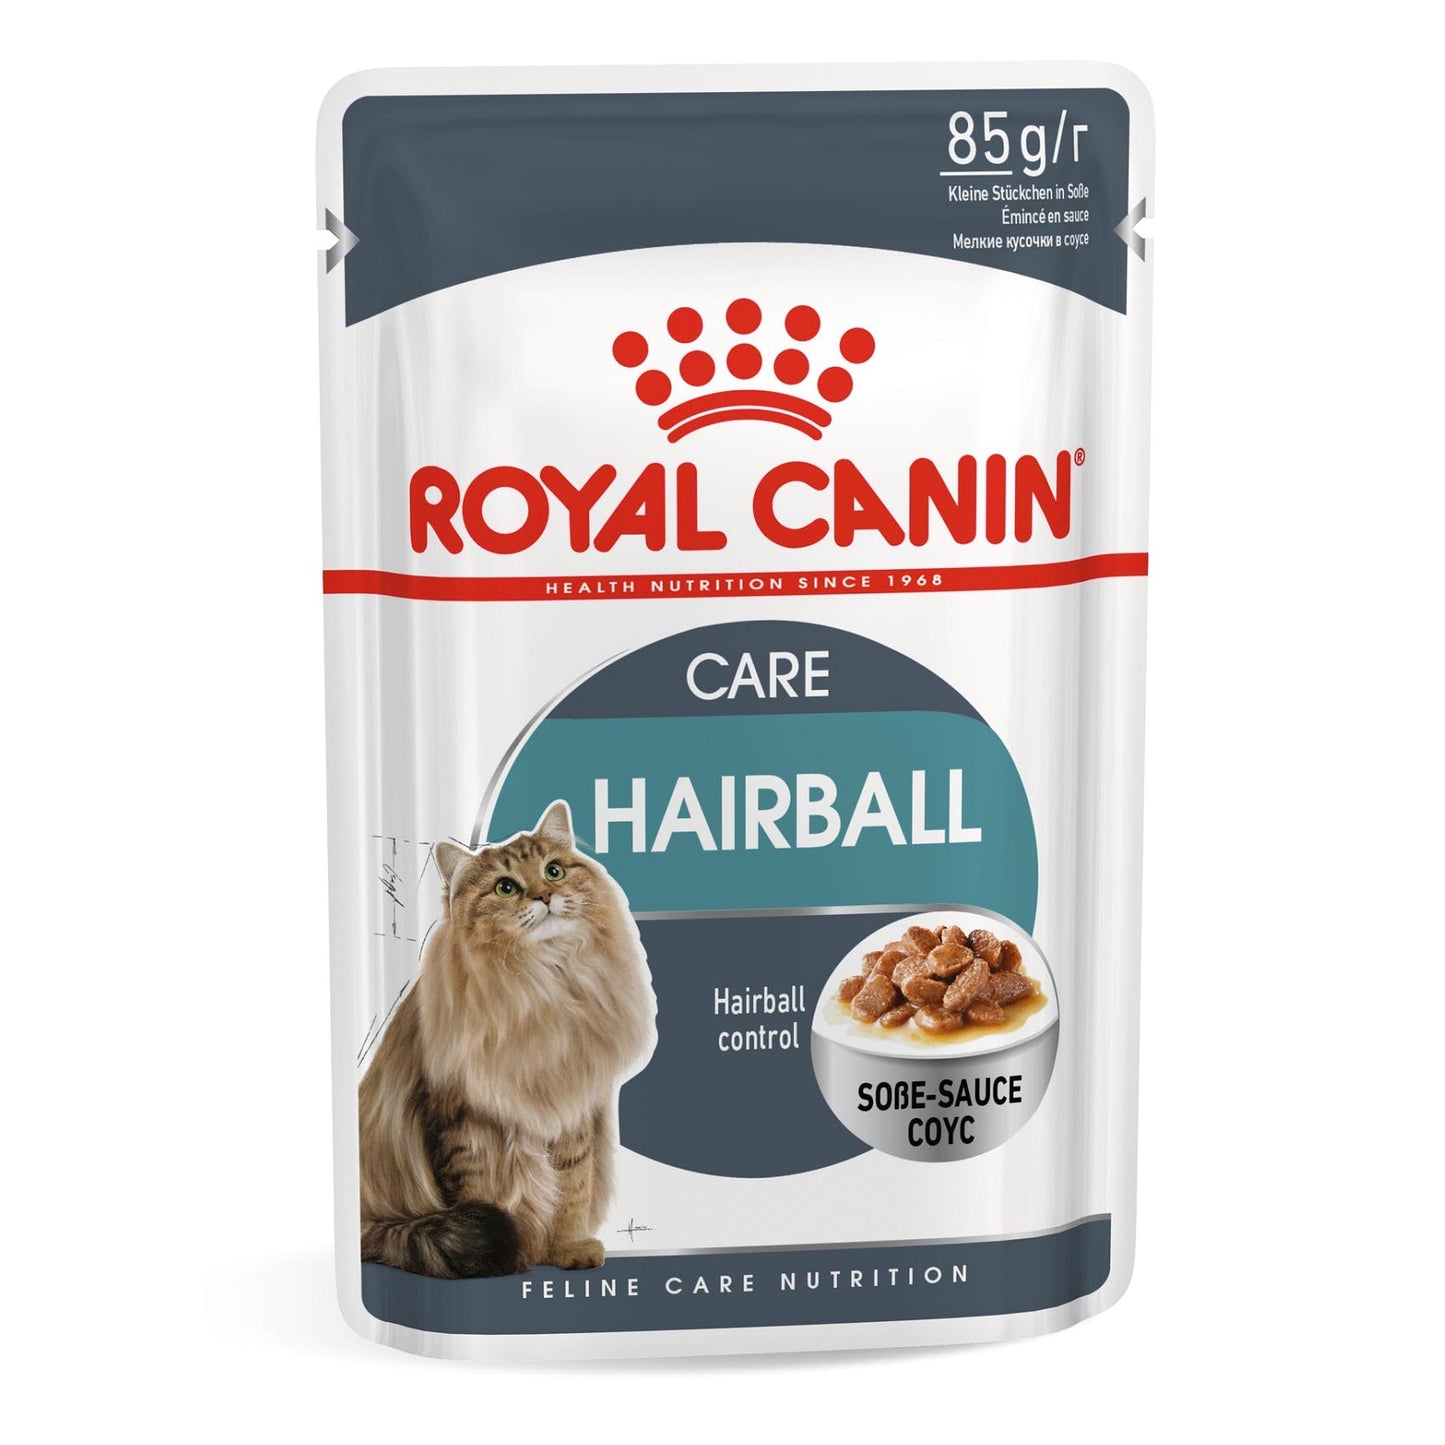 ROYAL CANIN - Hairball Care (12 x 85g)